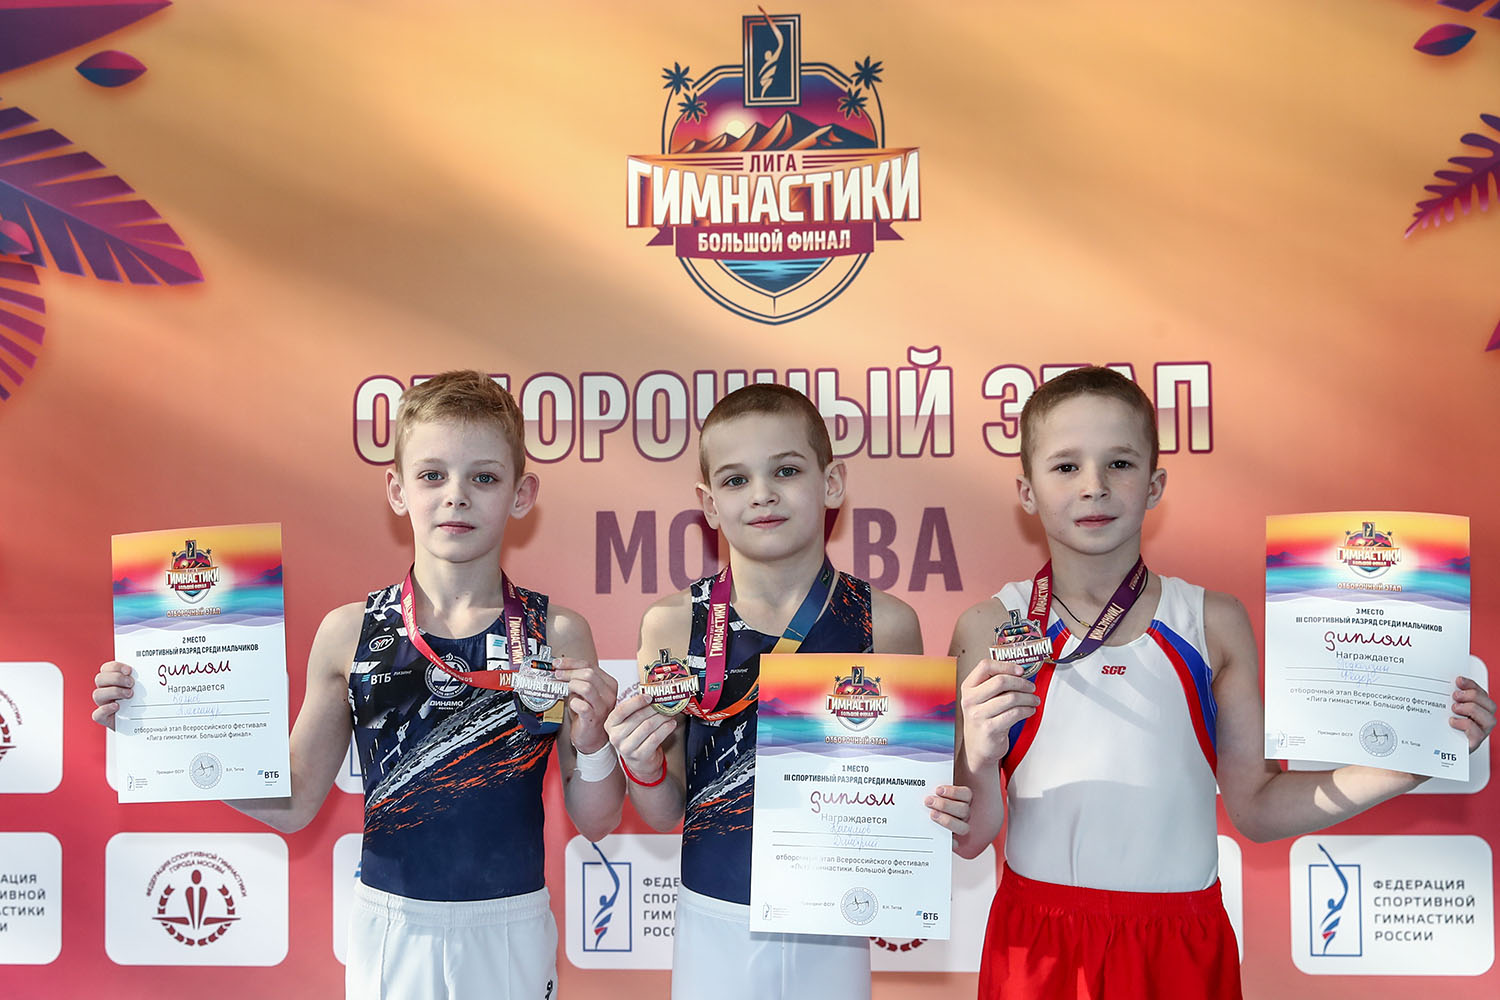 Московская федерация спортивного